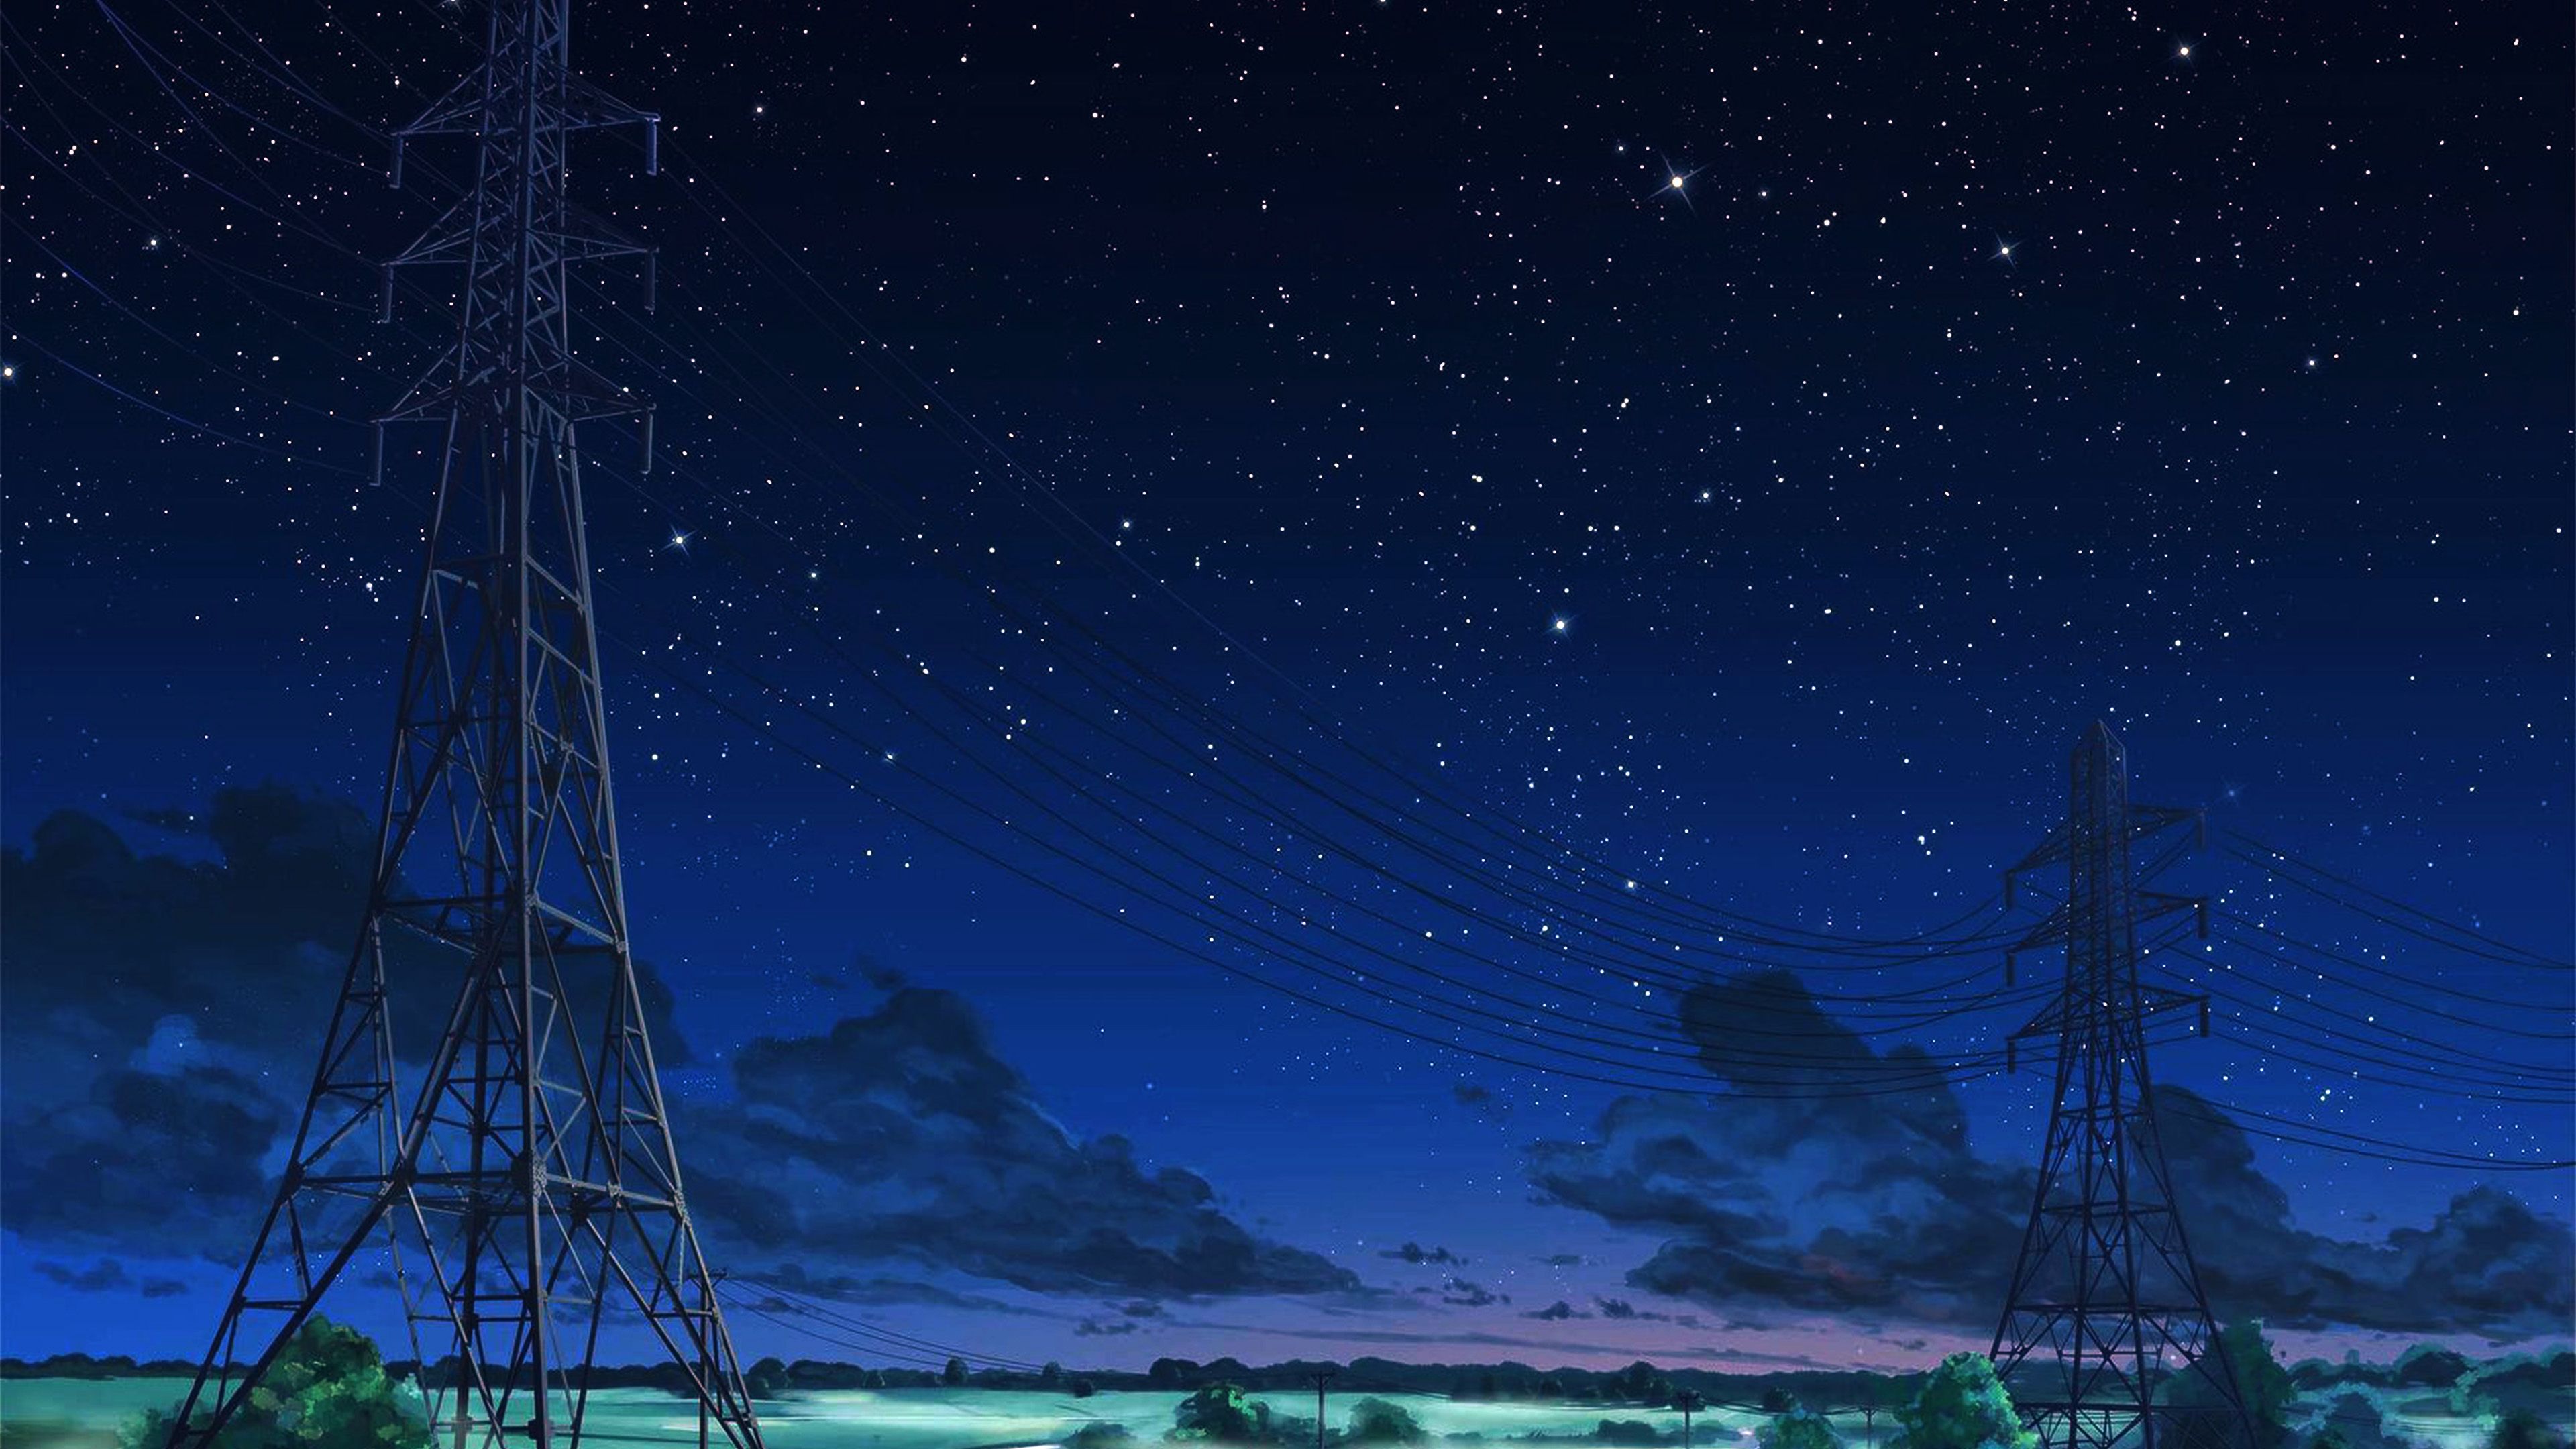 wallpaper for desktop, laptop. arseniy chebynkin night sky star blue illustration art anime dark